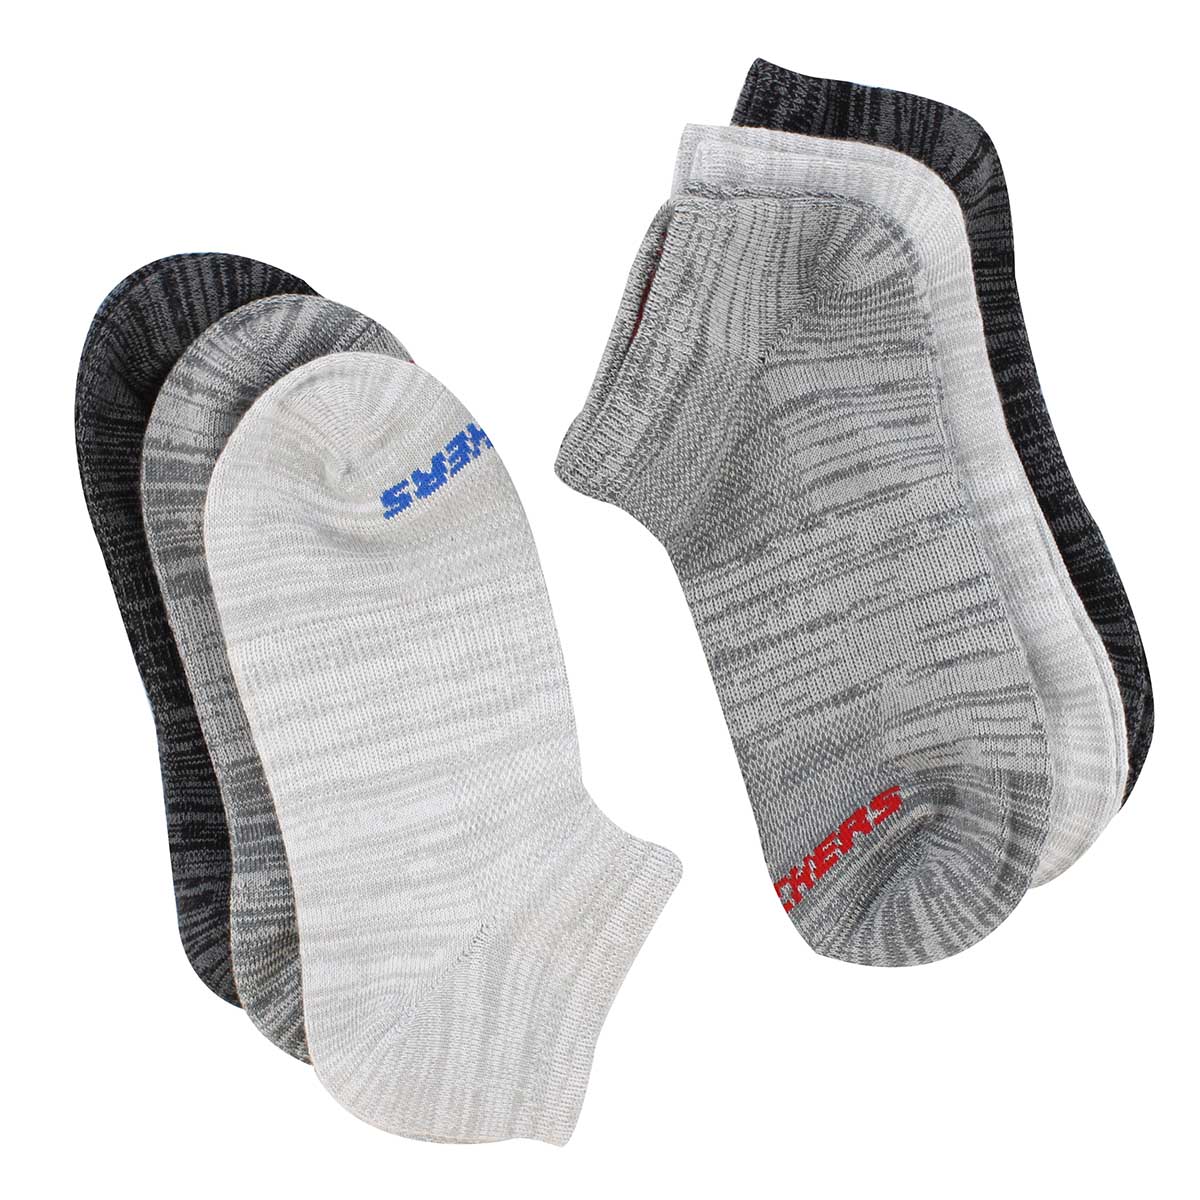 I Love Yorkie Novelty Socks For Women /& Men One Size Gifts